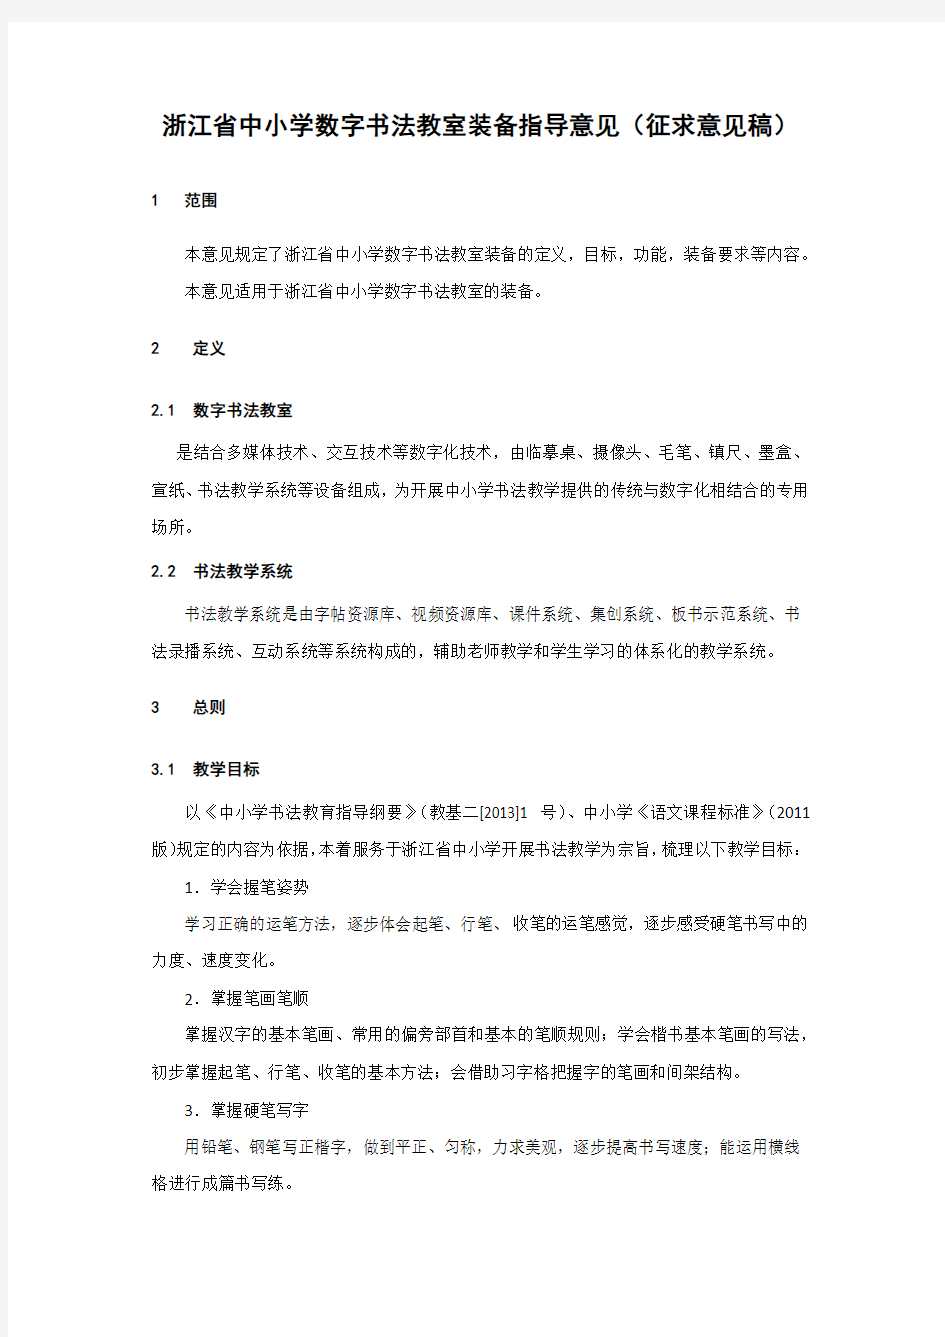 浙江省中小学数字书法教室装备指导意见(征求意见稿)